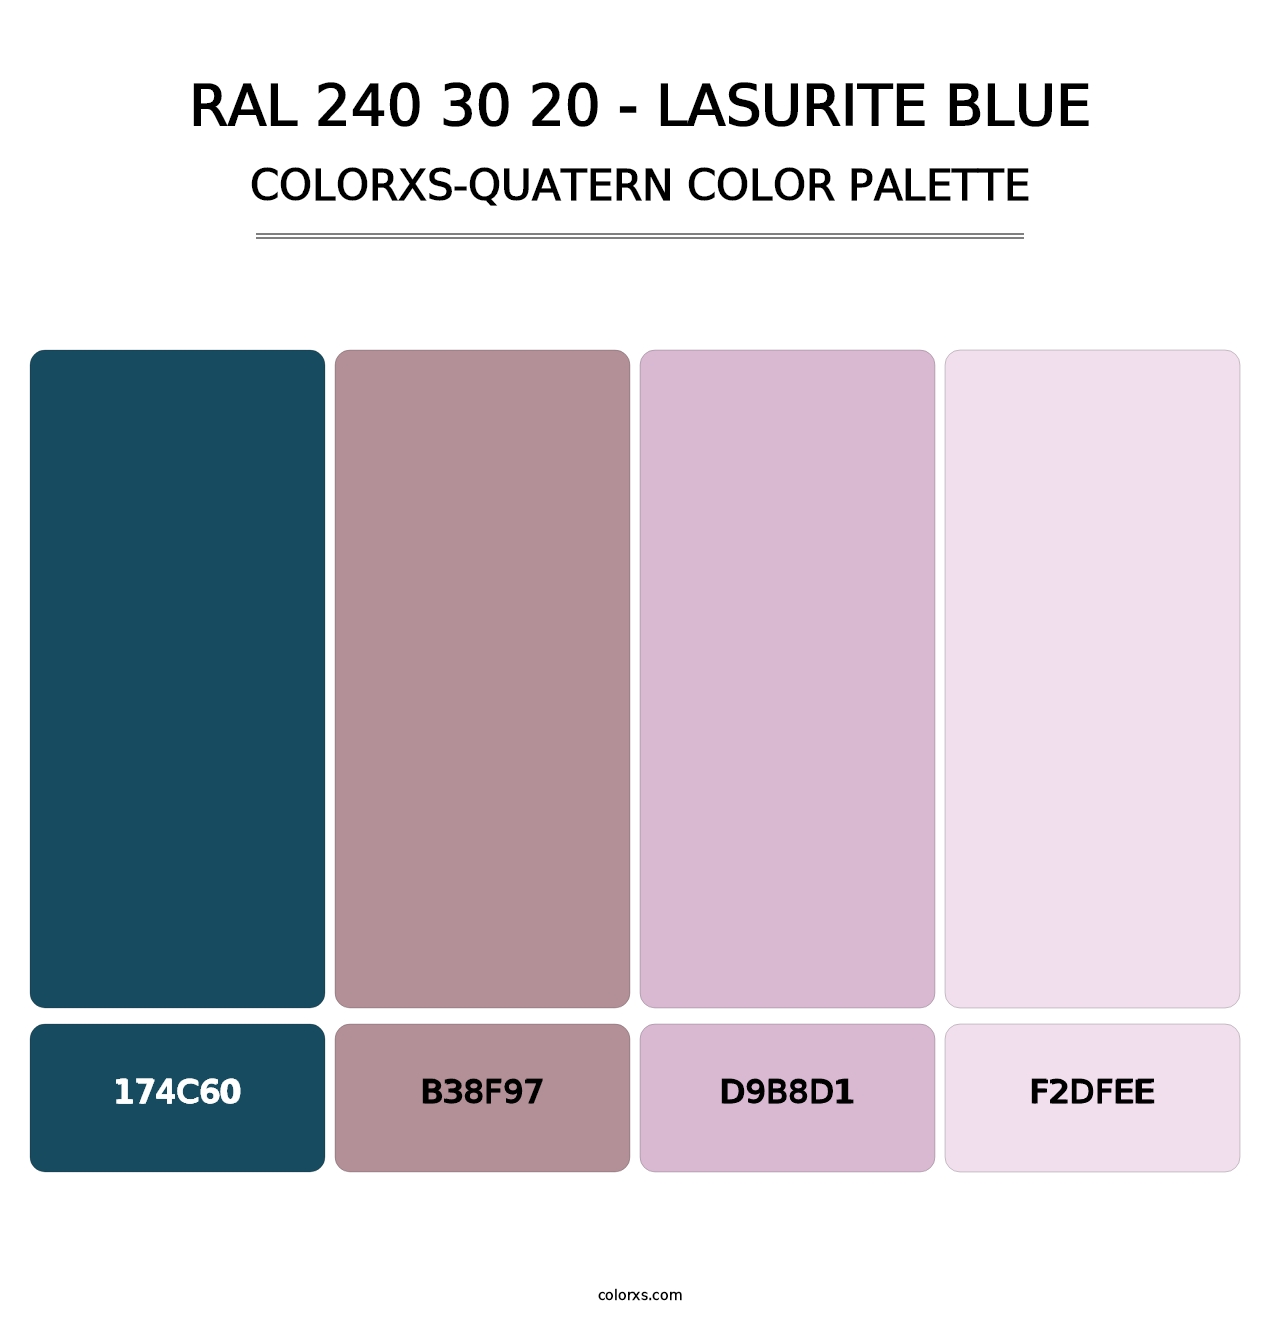 RAL 240 30 20 - Lasurite Blue - Colorxs Quatern Palette